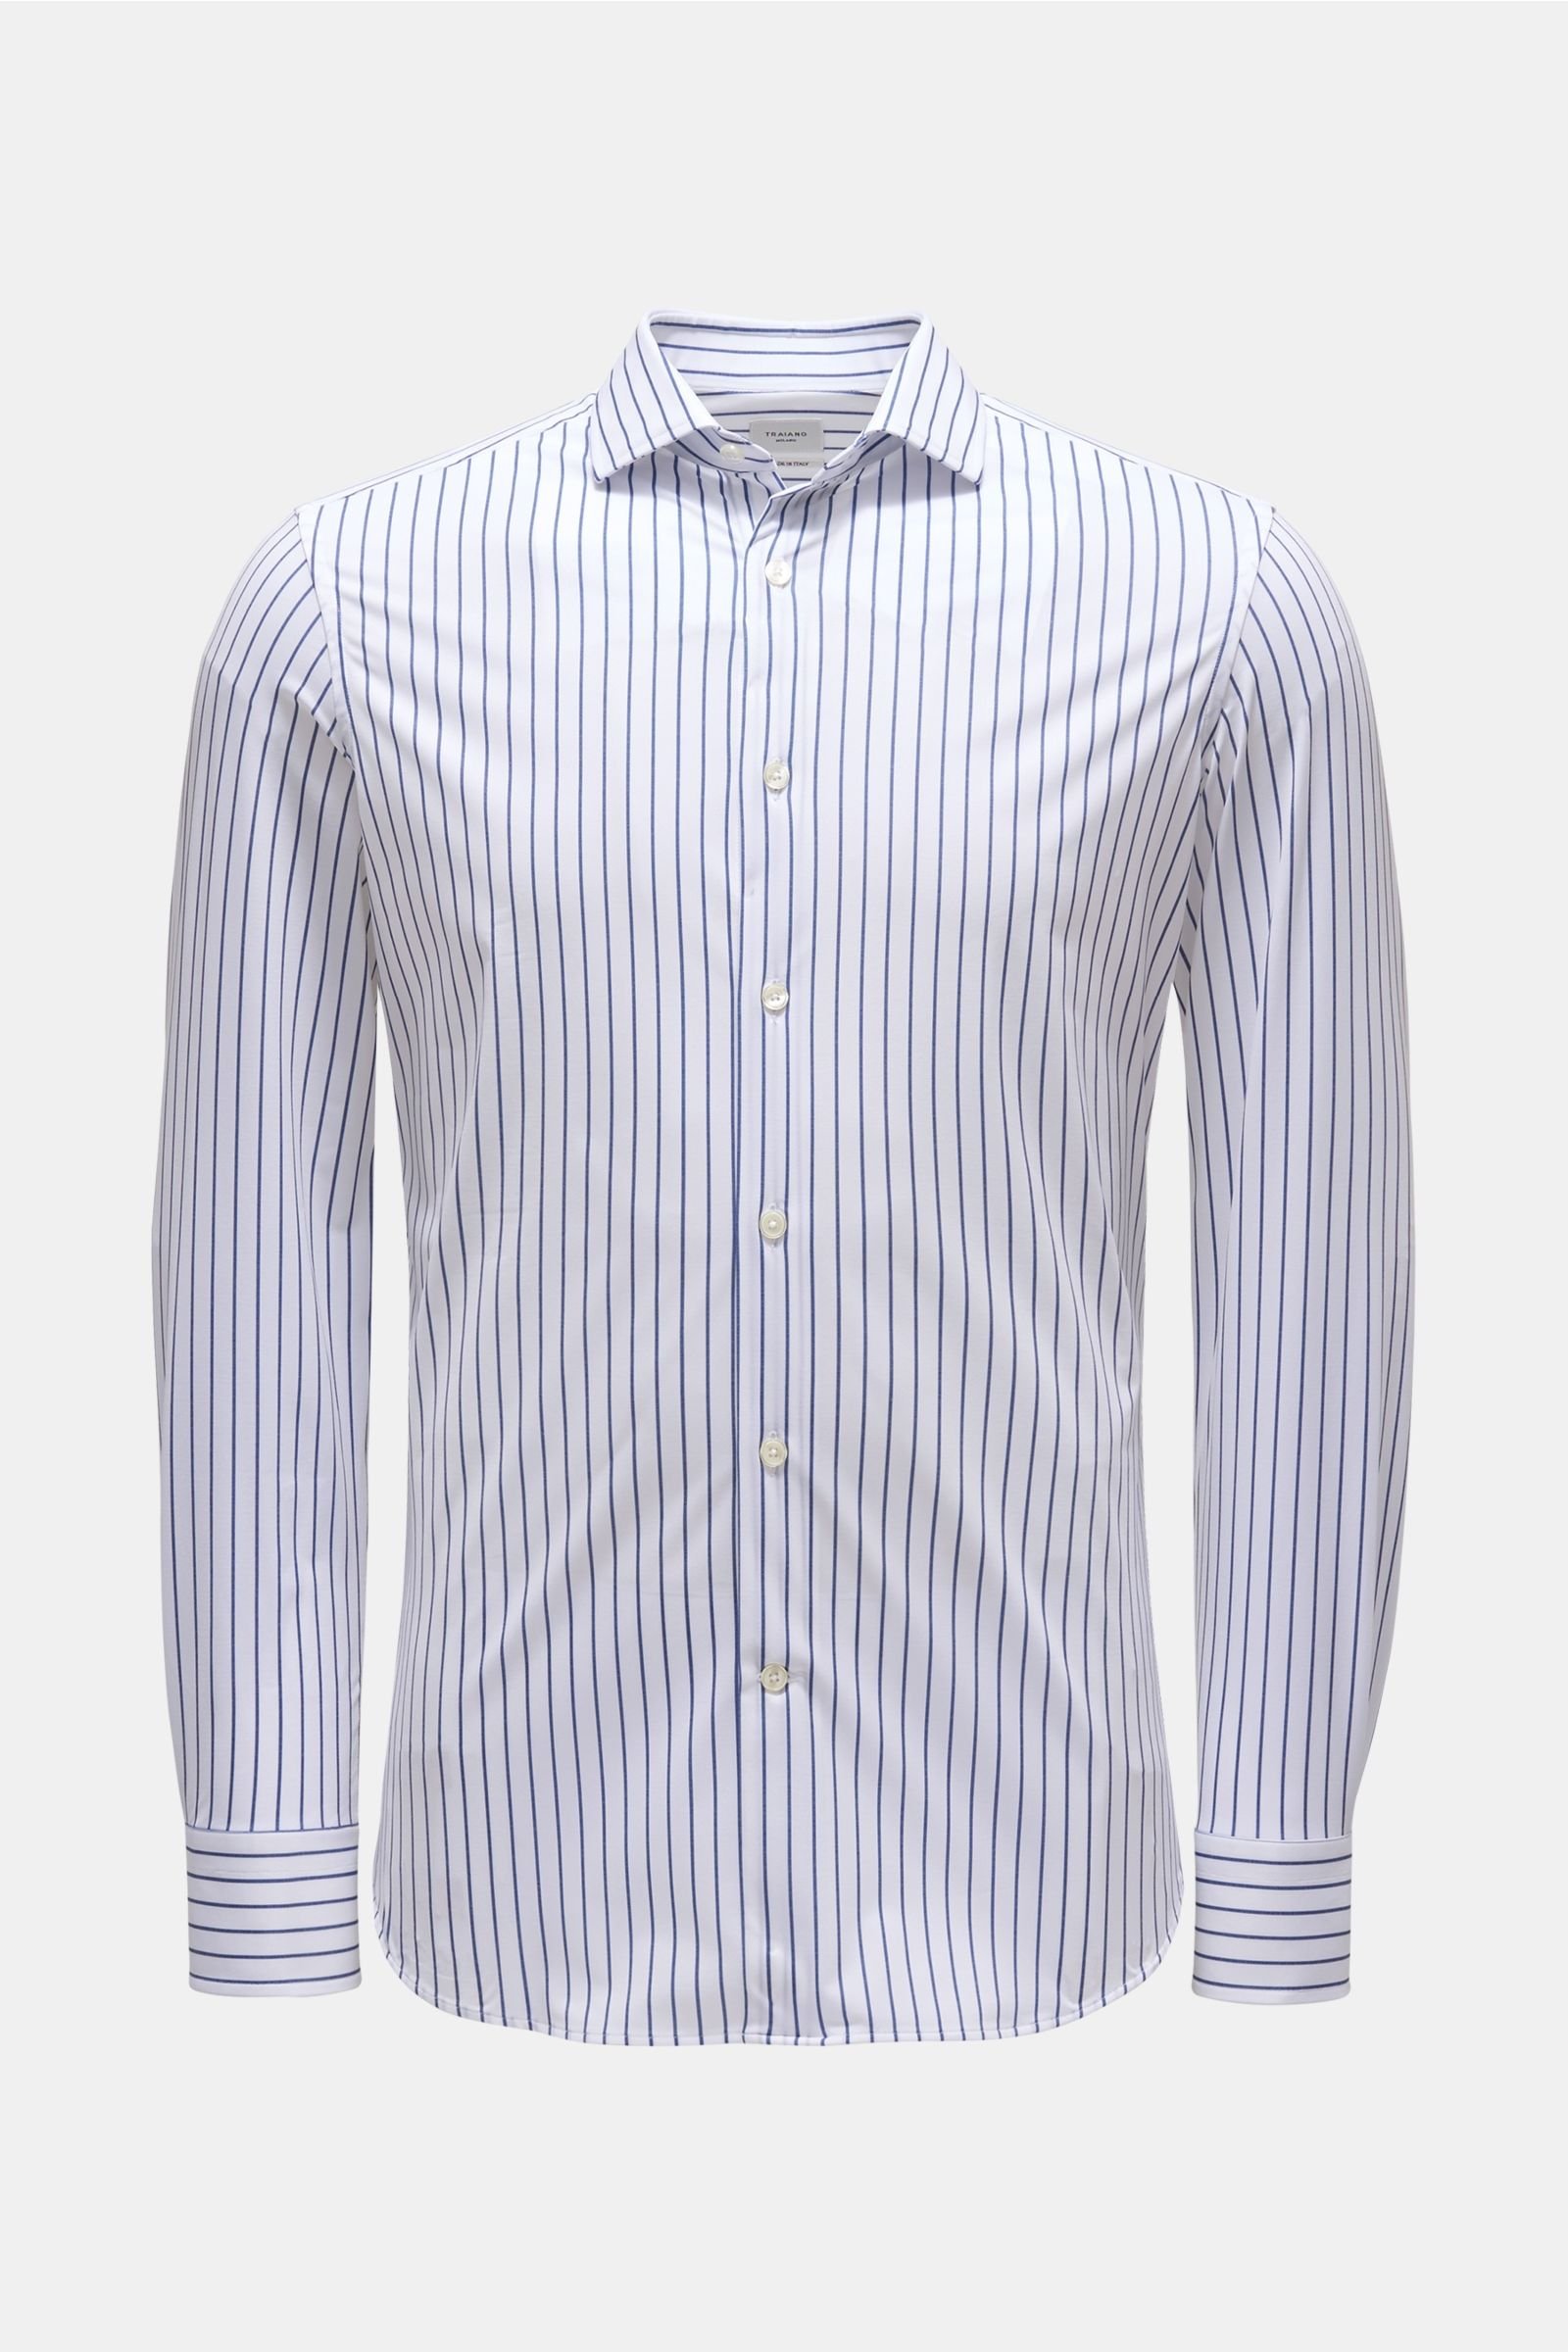 Jersey-Hemd 'Rossini Radical Shirt' Haifisch-Kragen weiß/dunkelblau gestreift